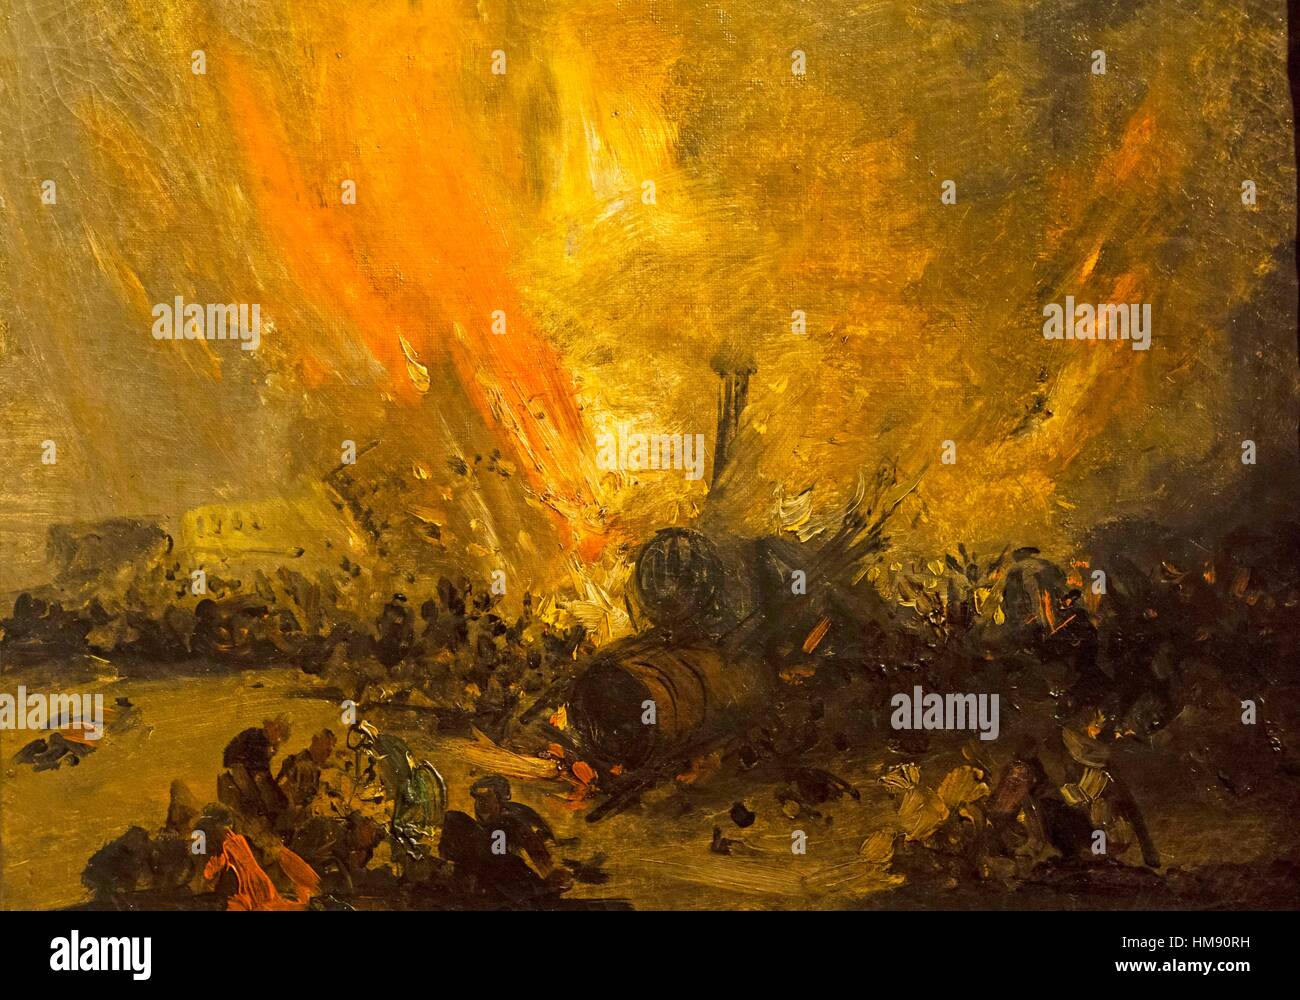 Genaro Pérez de Villamil, Explosion de una locomotora, oil on canvas, Museo Nacional de Bellas Artes (MNBA), Buenos Aires, Argentina Stock Photo